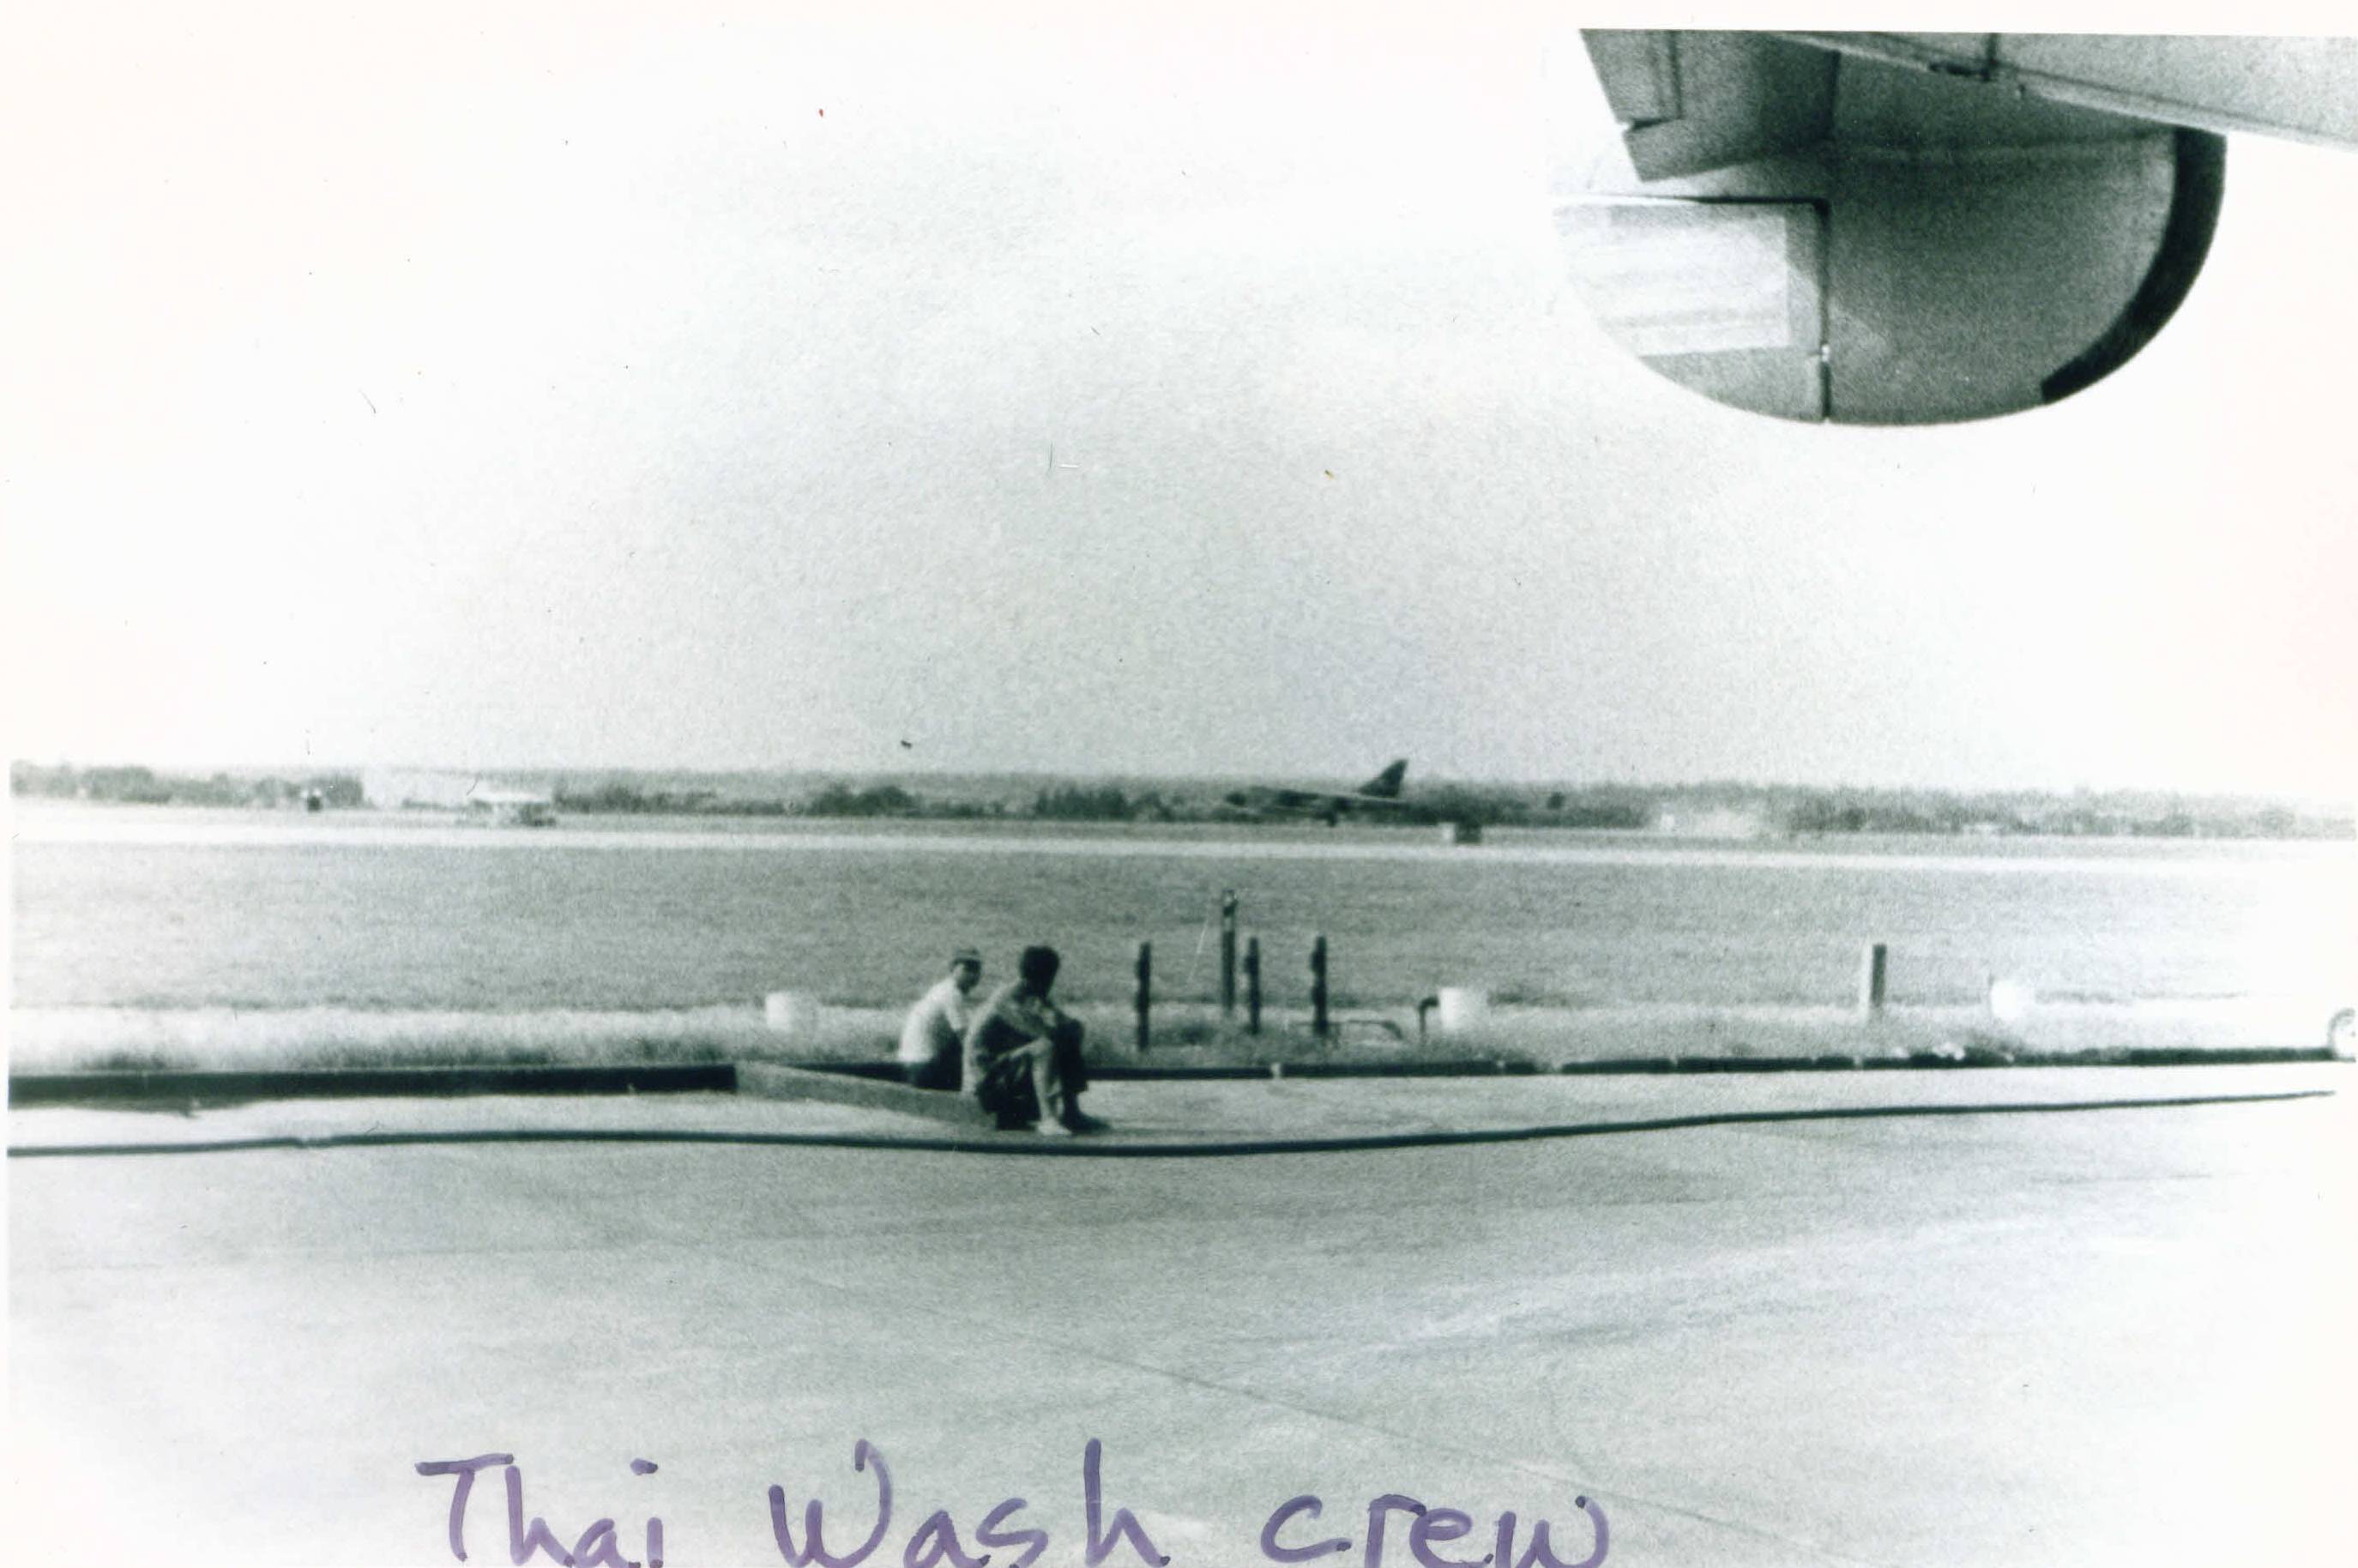 Thai Wash Crew